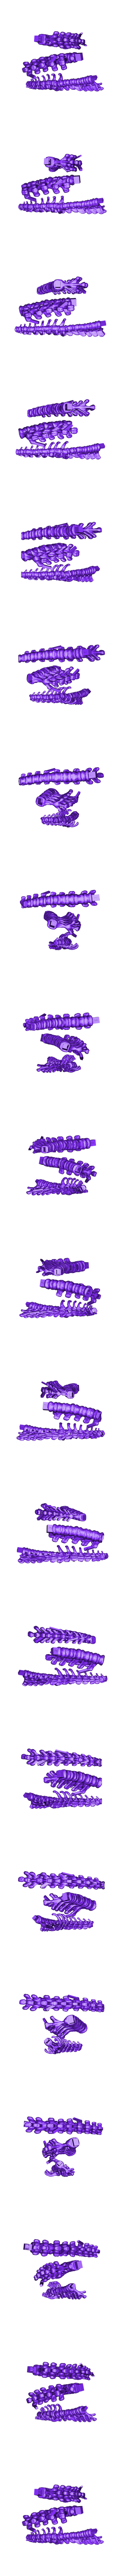 Stego_Spine_1.stl Télécharger fichier STL gratuit Stegosaurus Skeleton • Design à imprimer en 3D, JackieMake